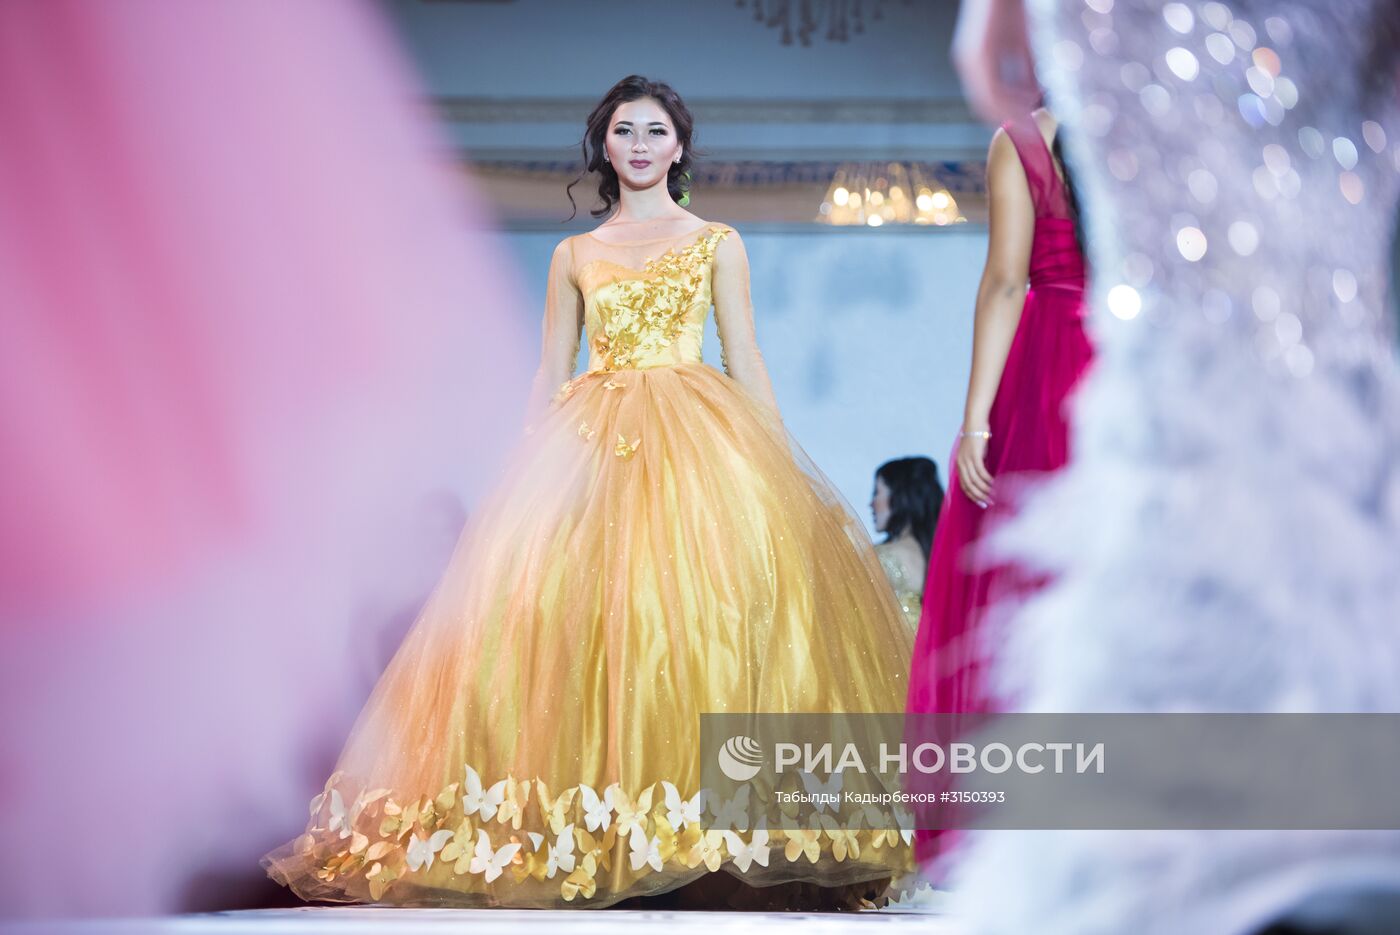 Конкурс красоты "Красавица Кыргызстана" в Бишкеке